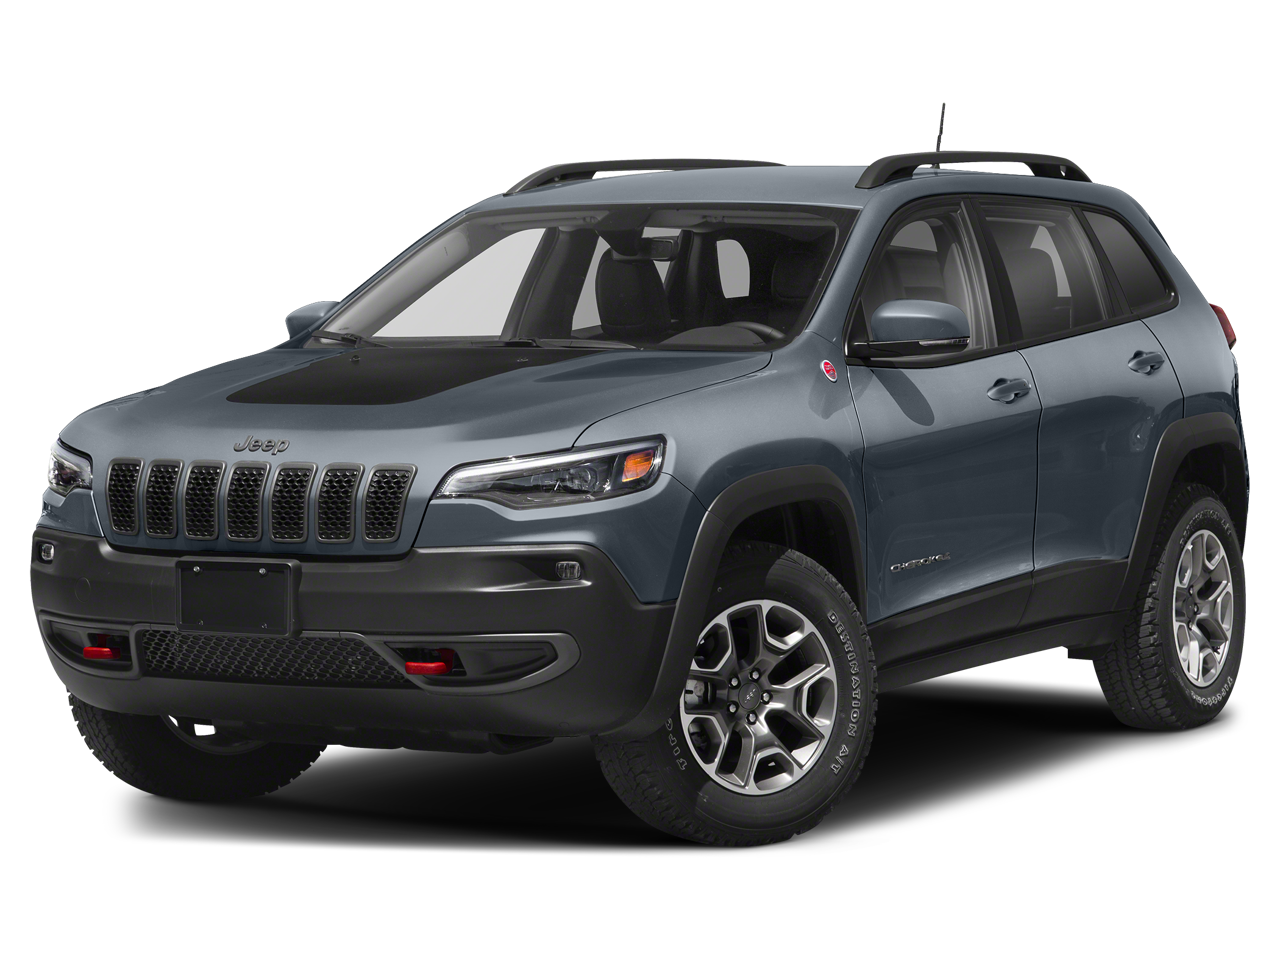 2019 Jeep Cherokee Trailhawk 4x4